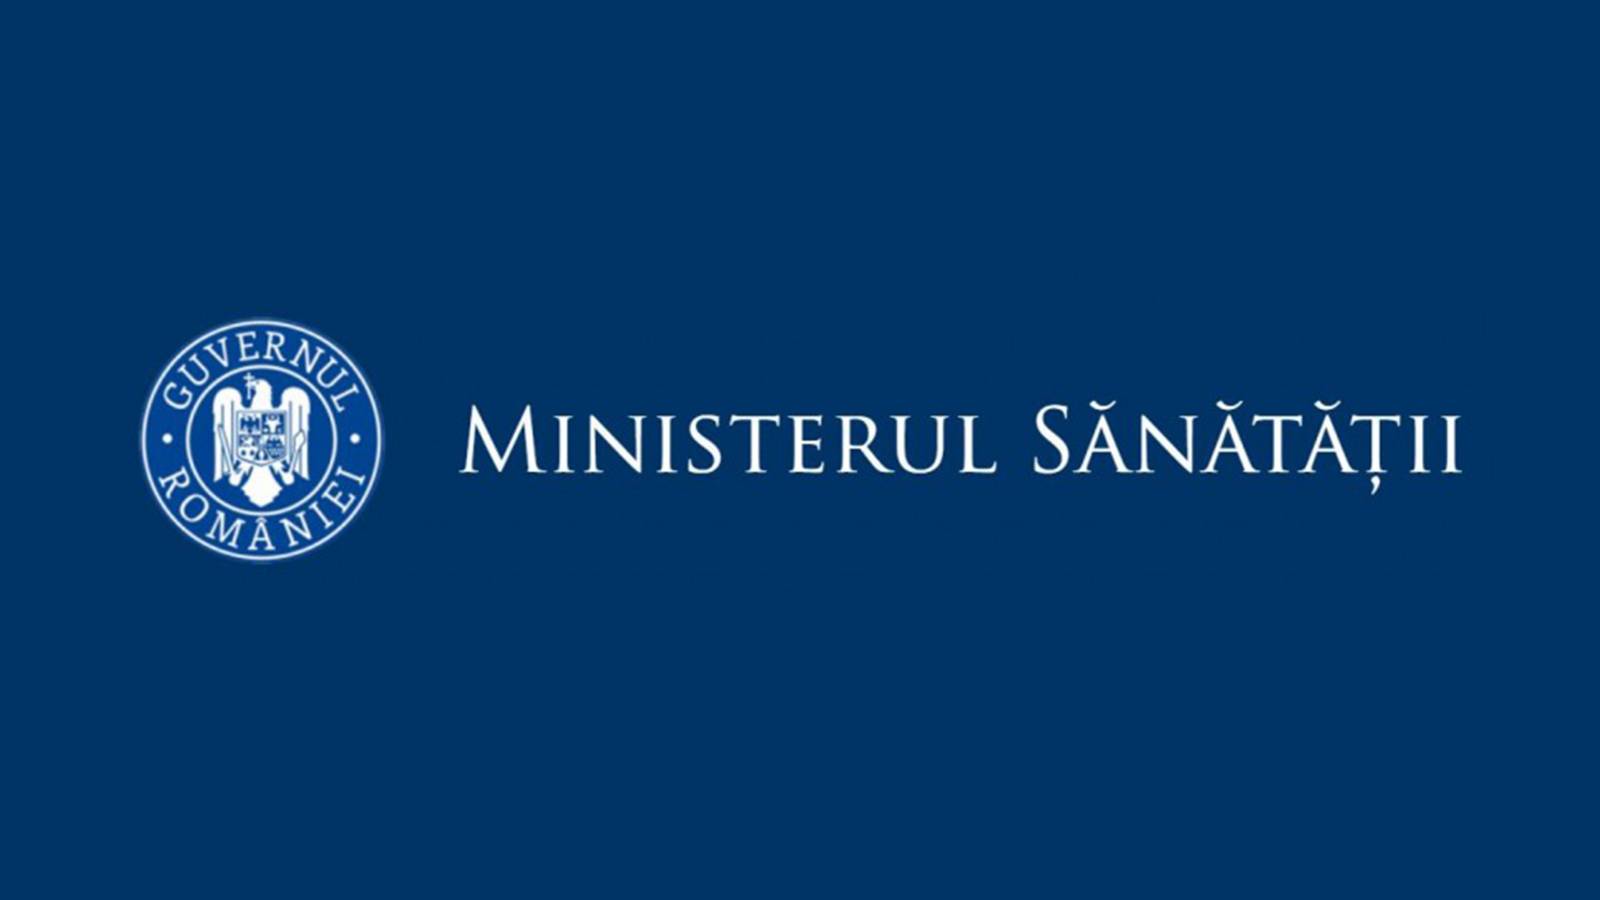 Ministerstwo Zdrowia Sprawy Rumunia Warianty zagrożenia SARS-CoV-2